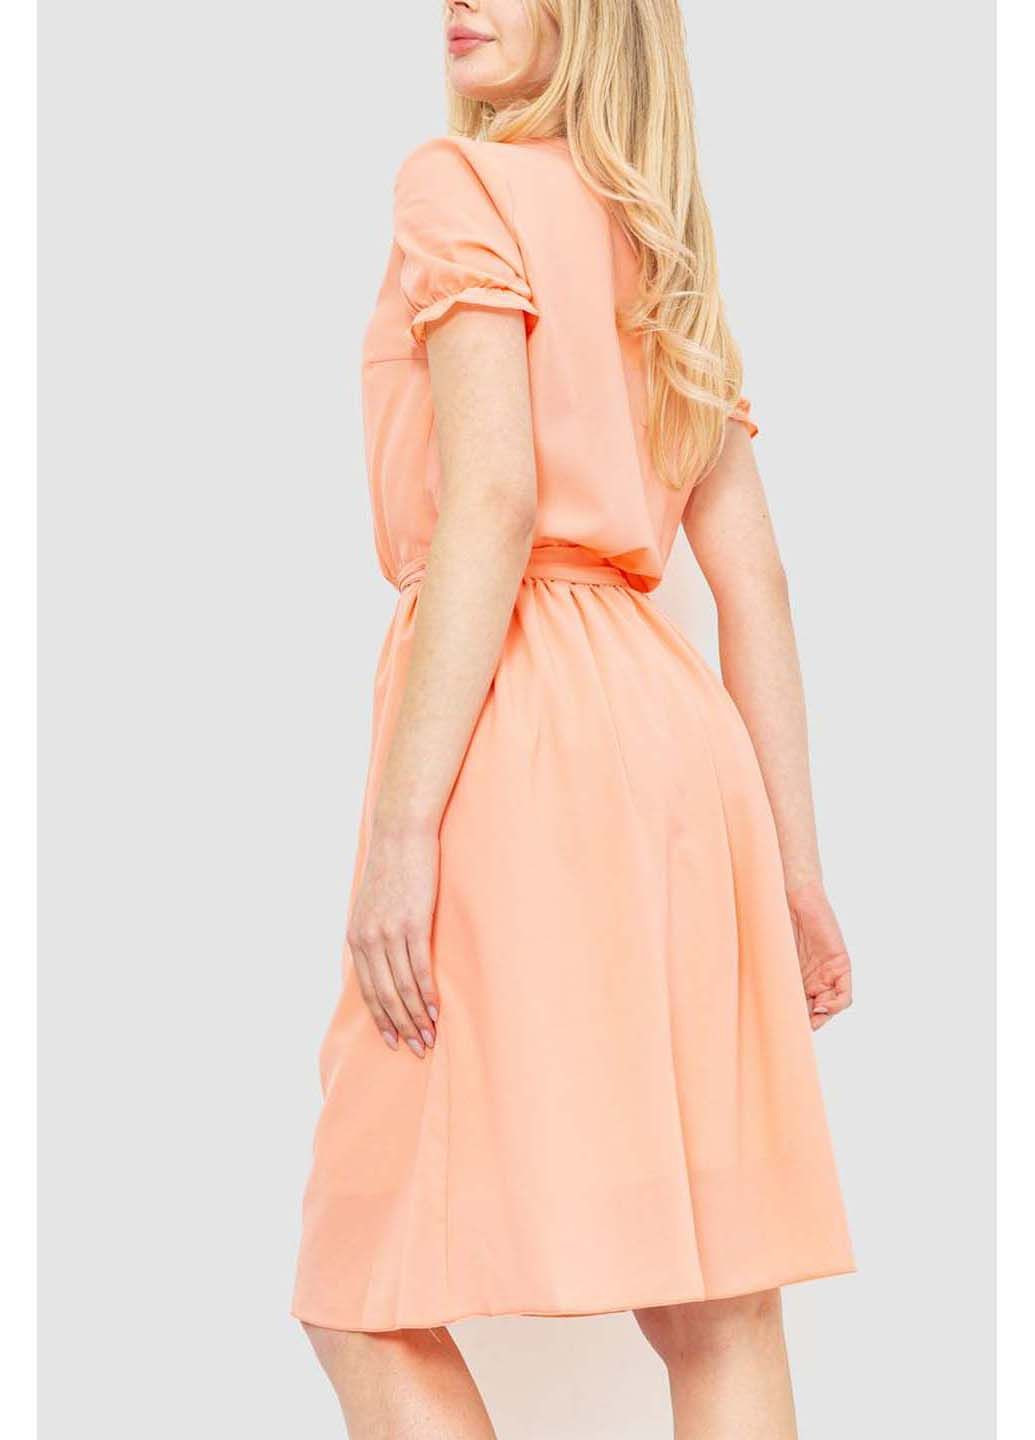 Персикова сукня Ager